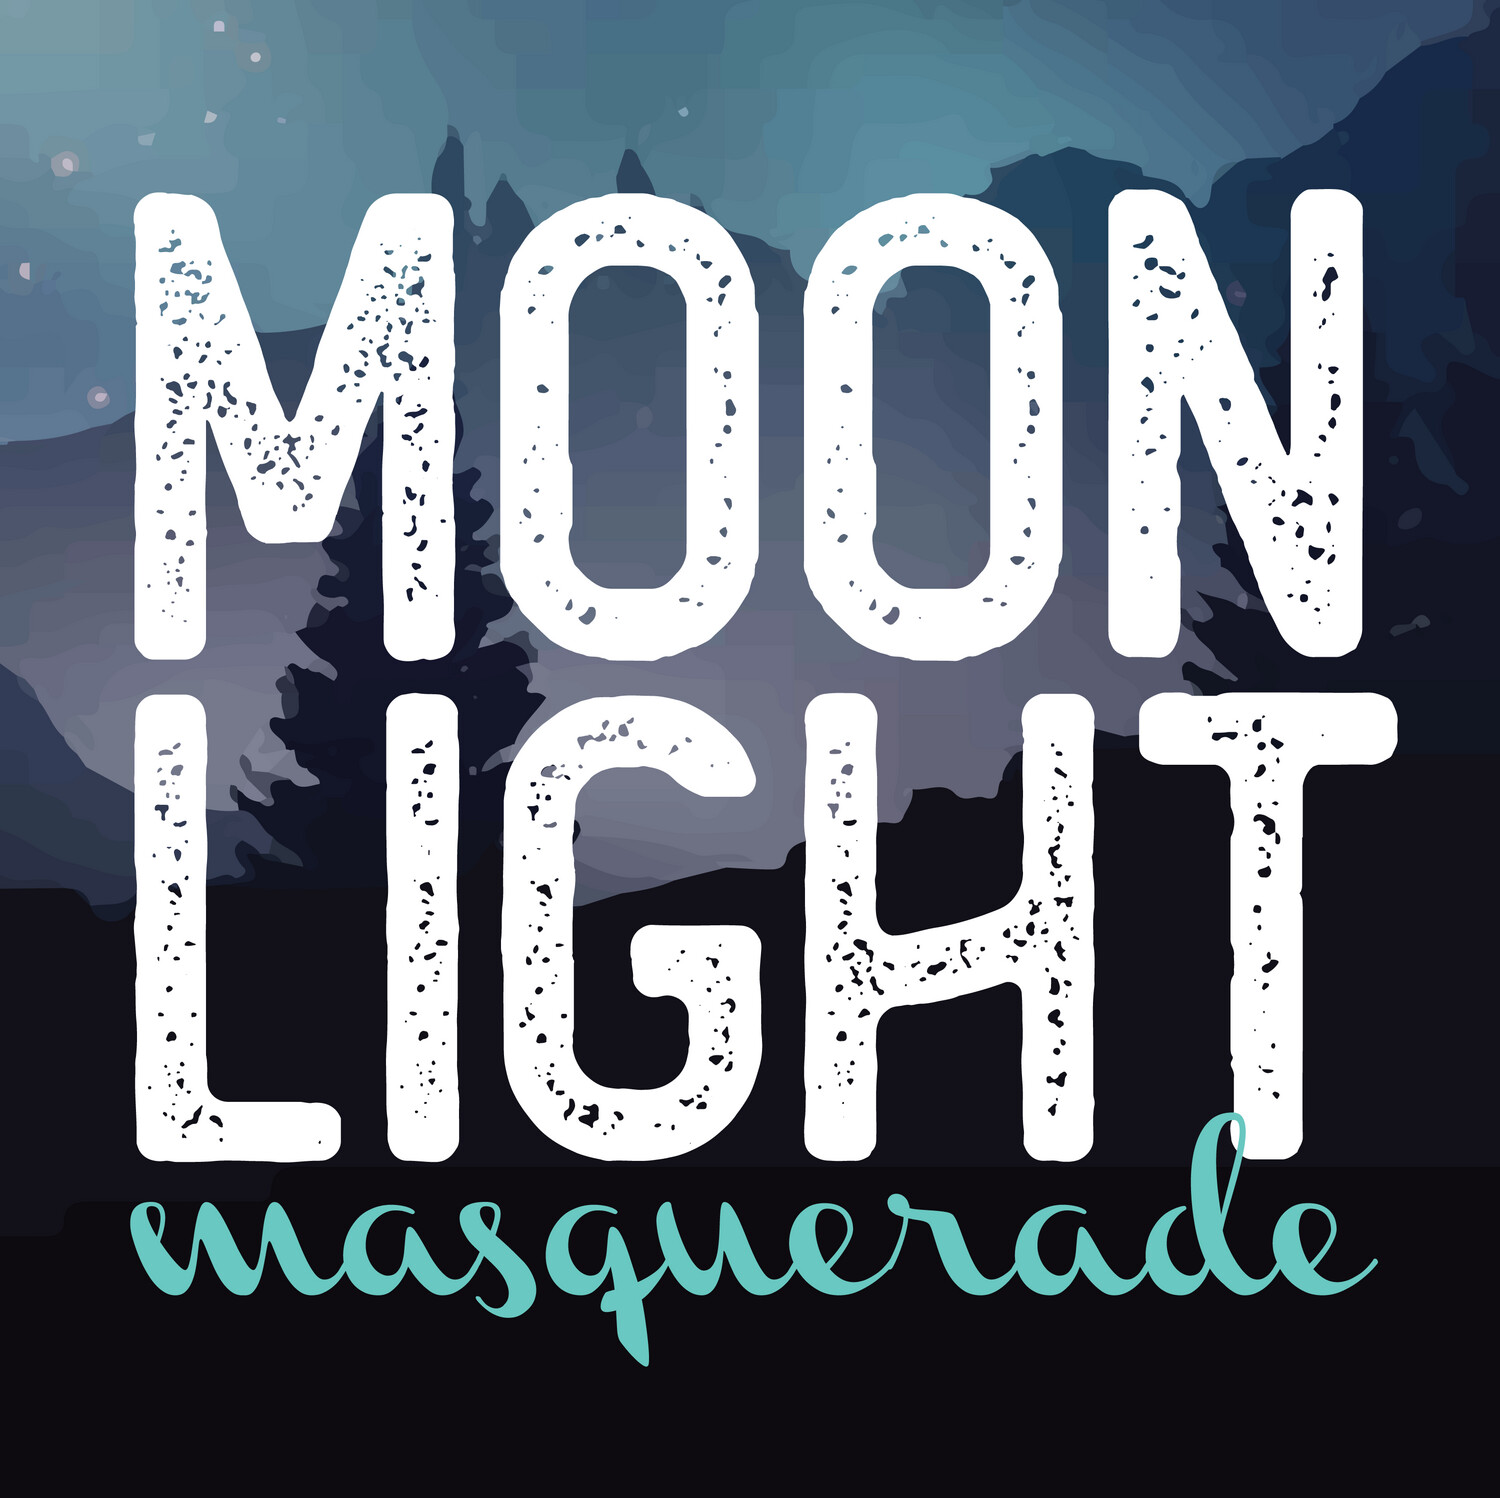 Moonlight Masquerade - Single Ticket